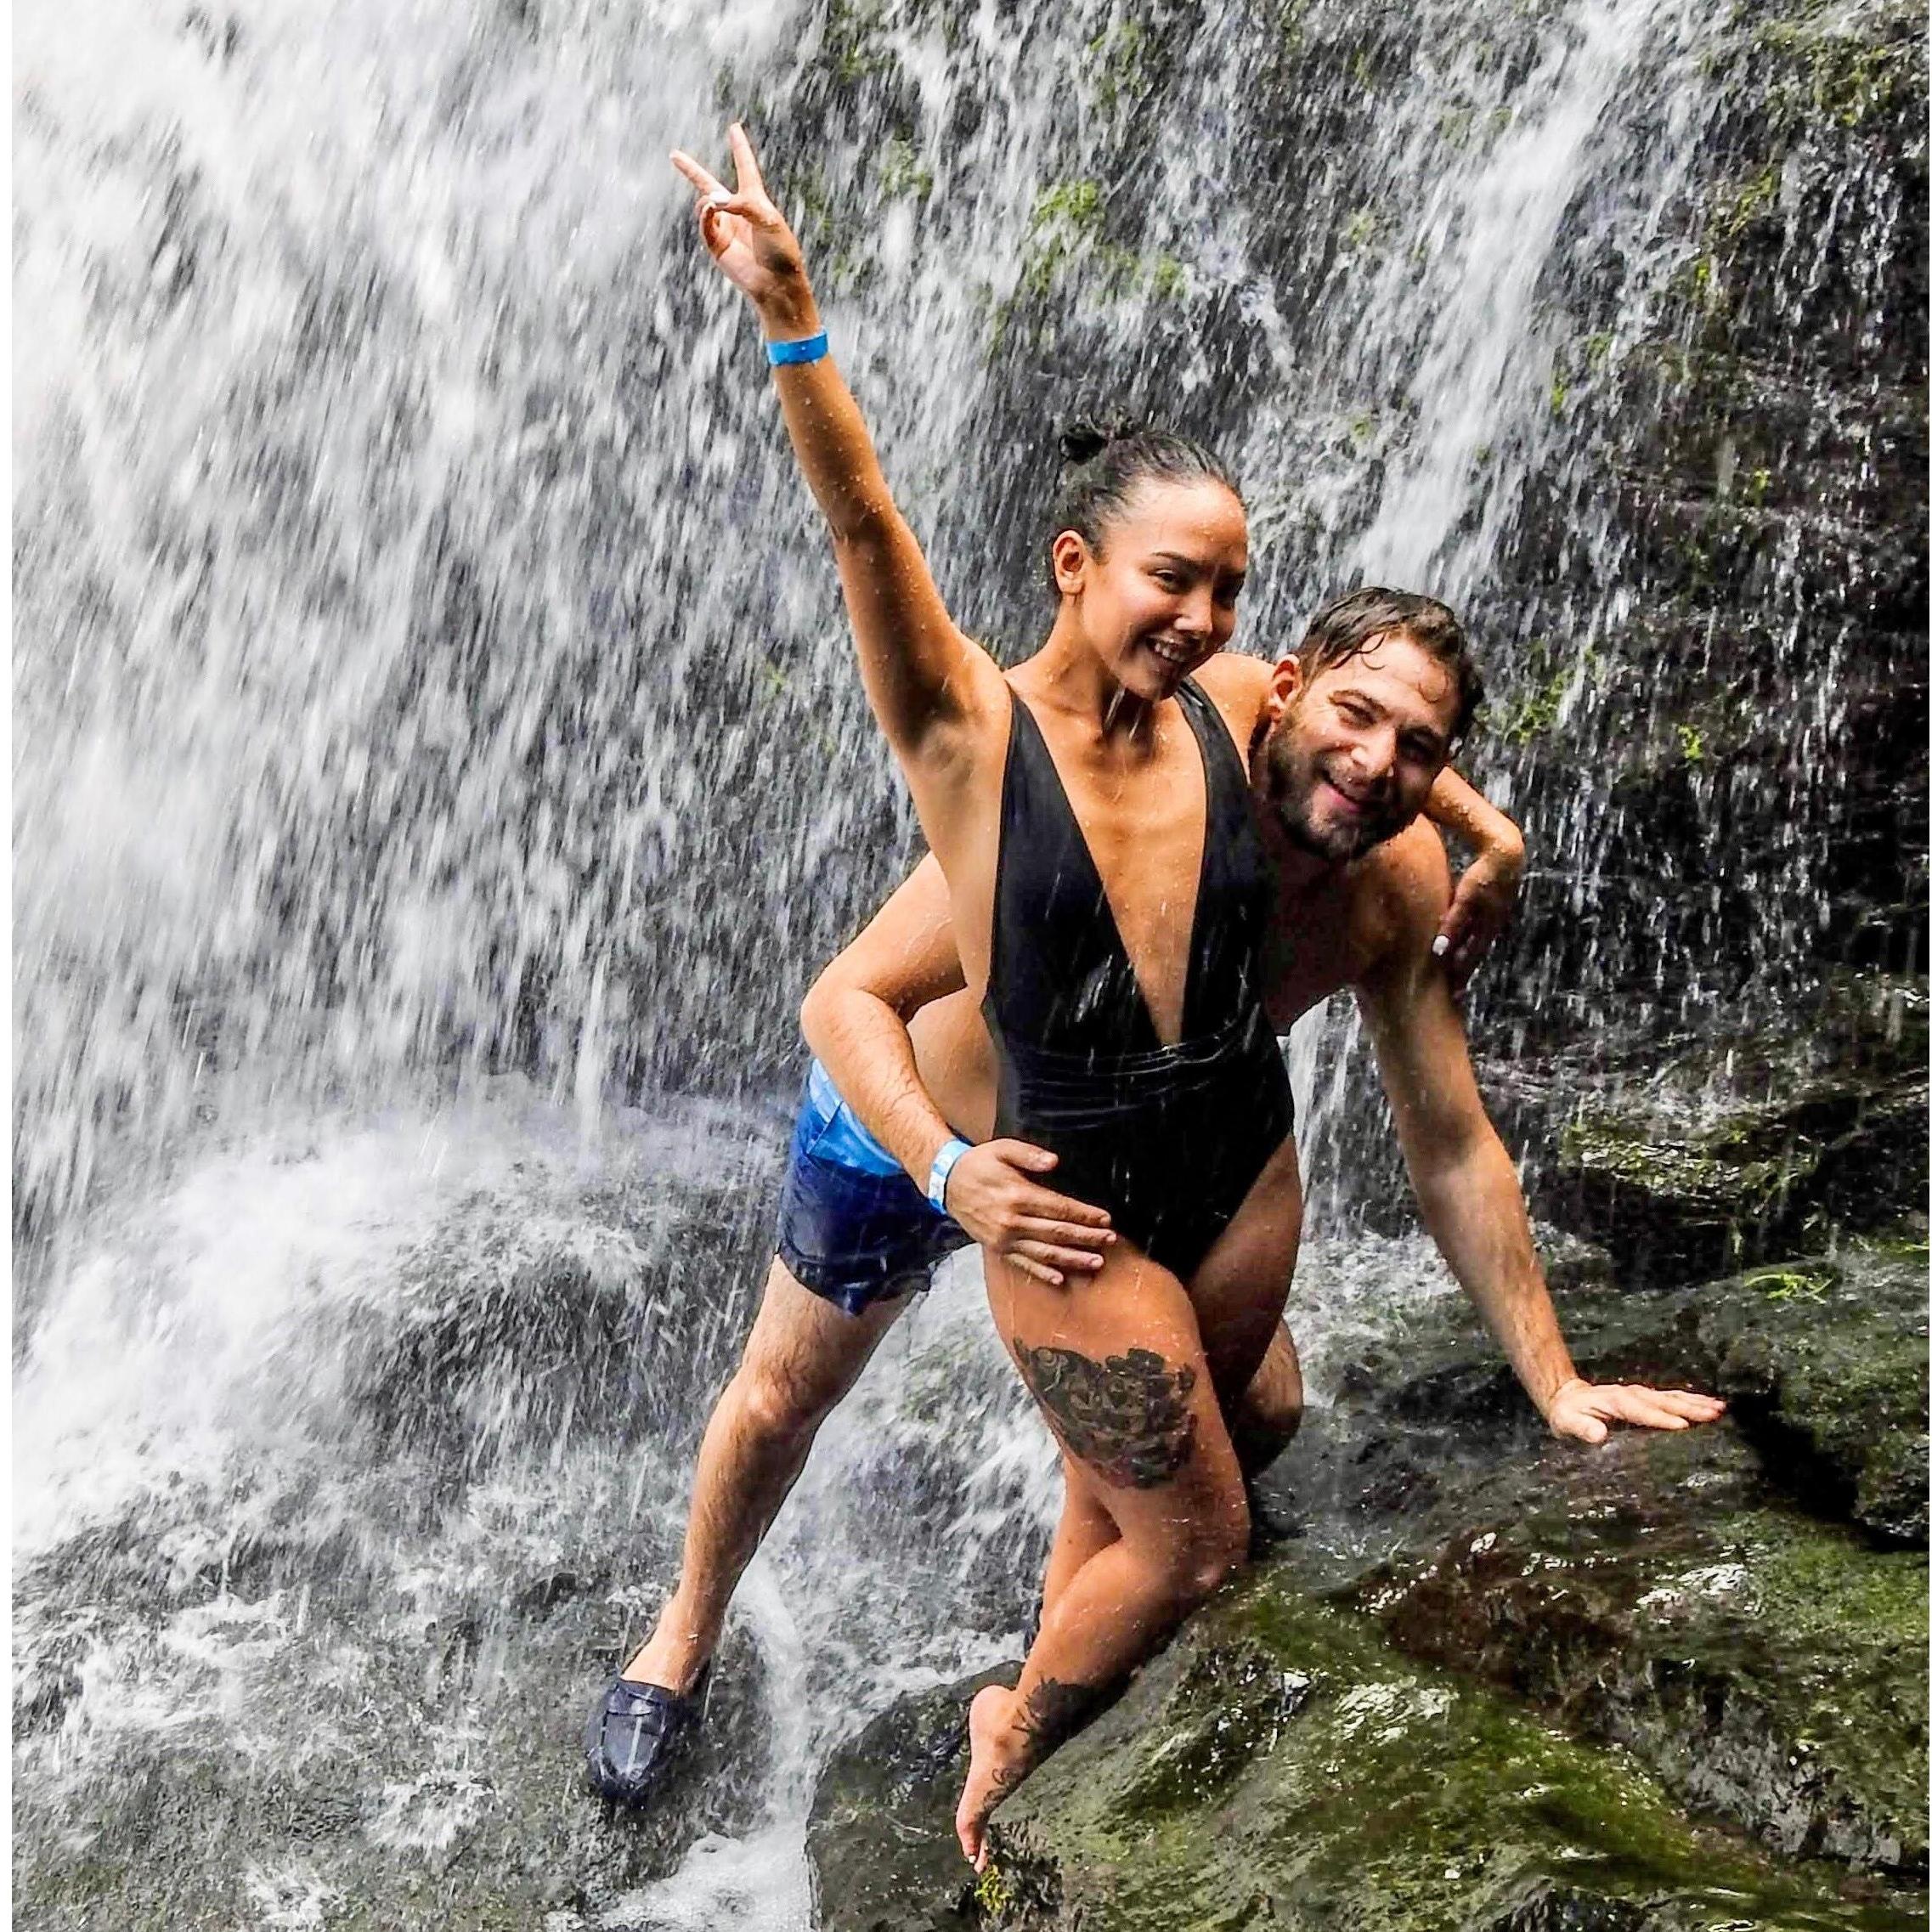 Nauyaca waterfall in Costa Rica